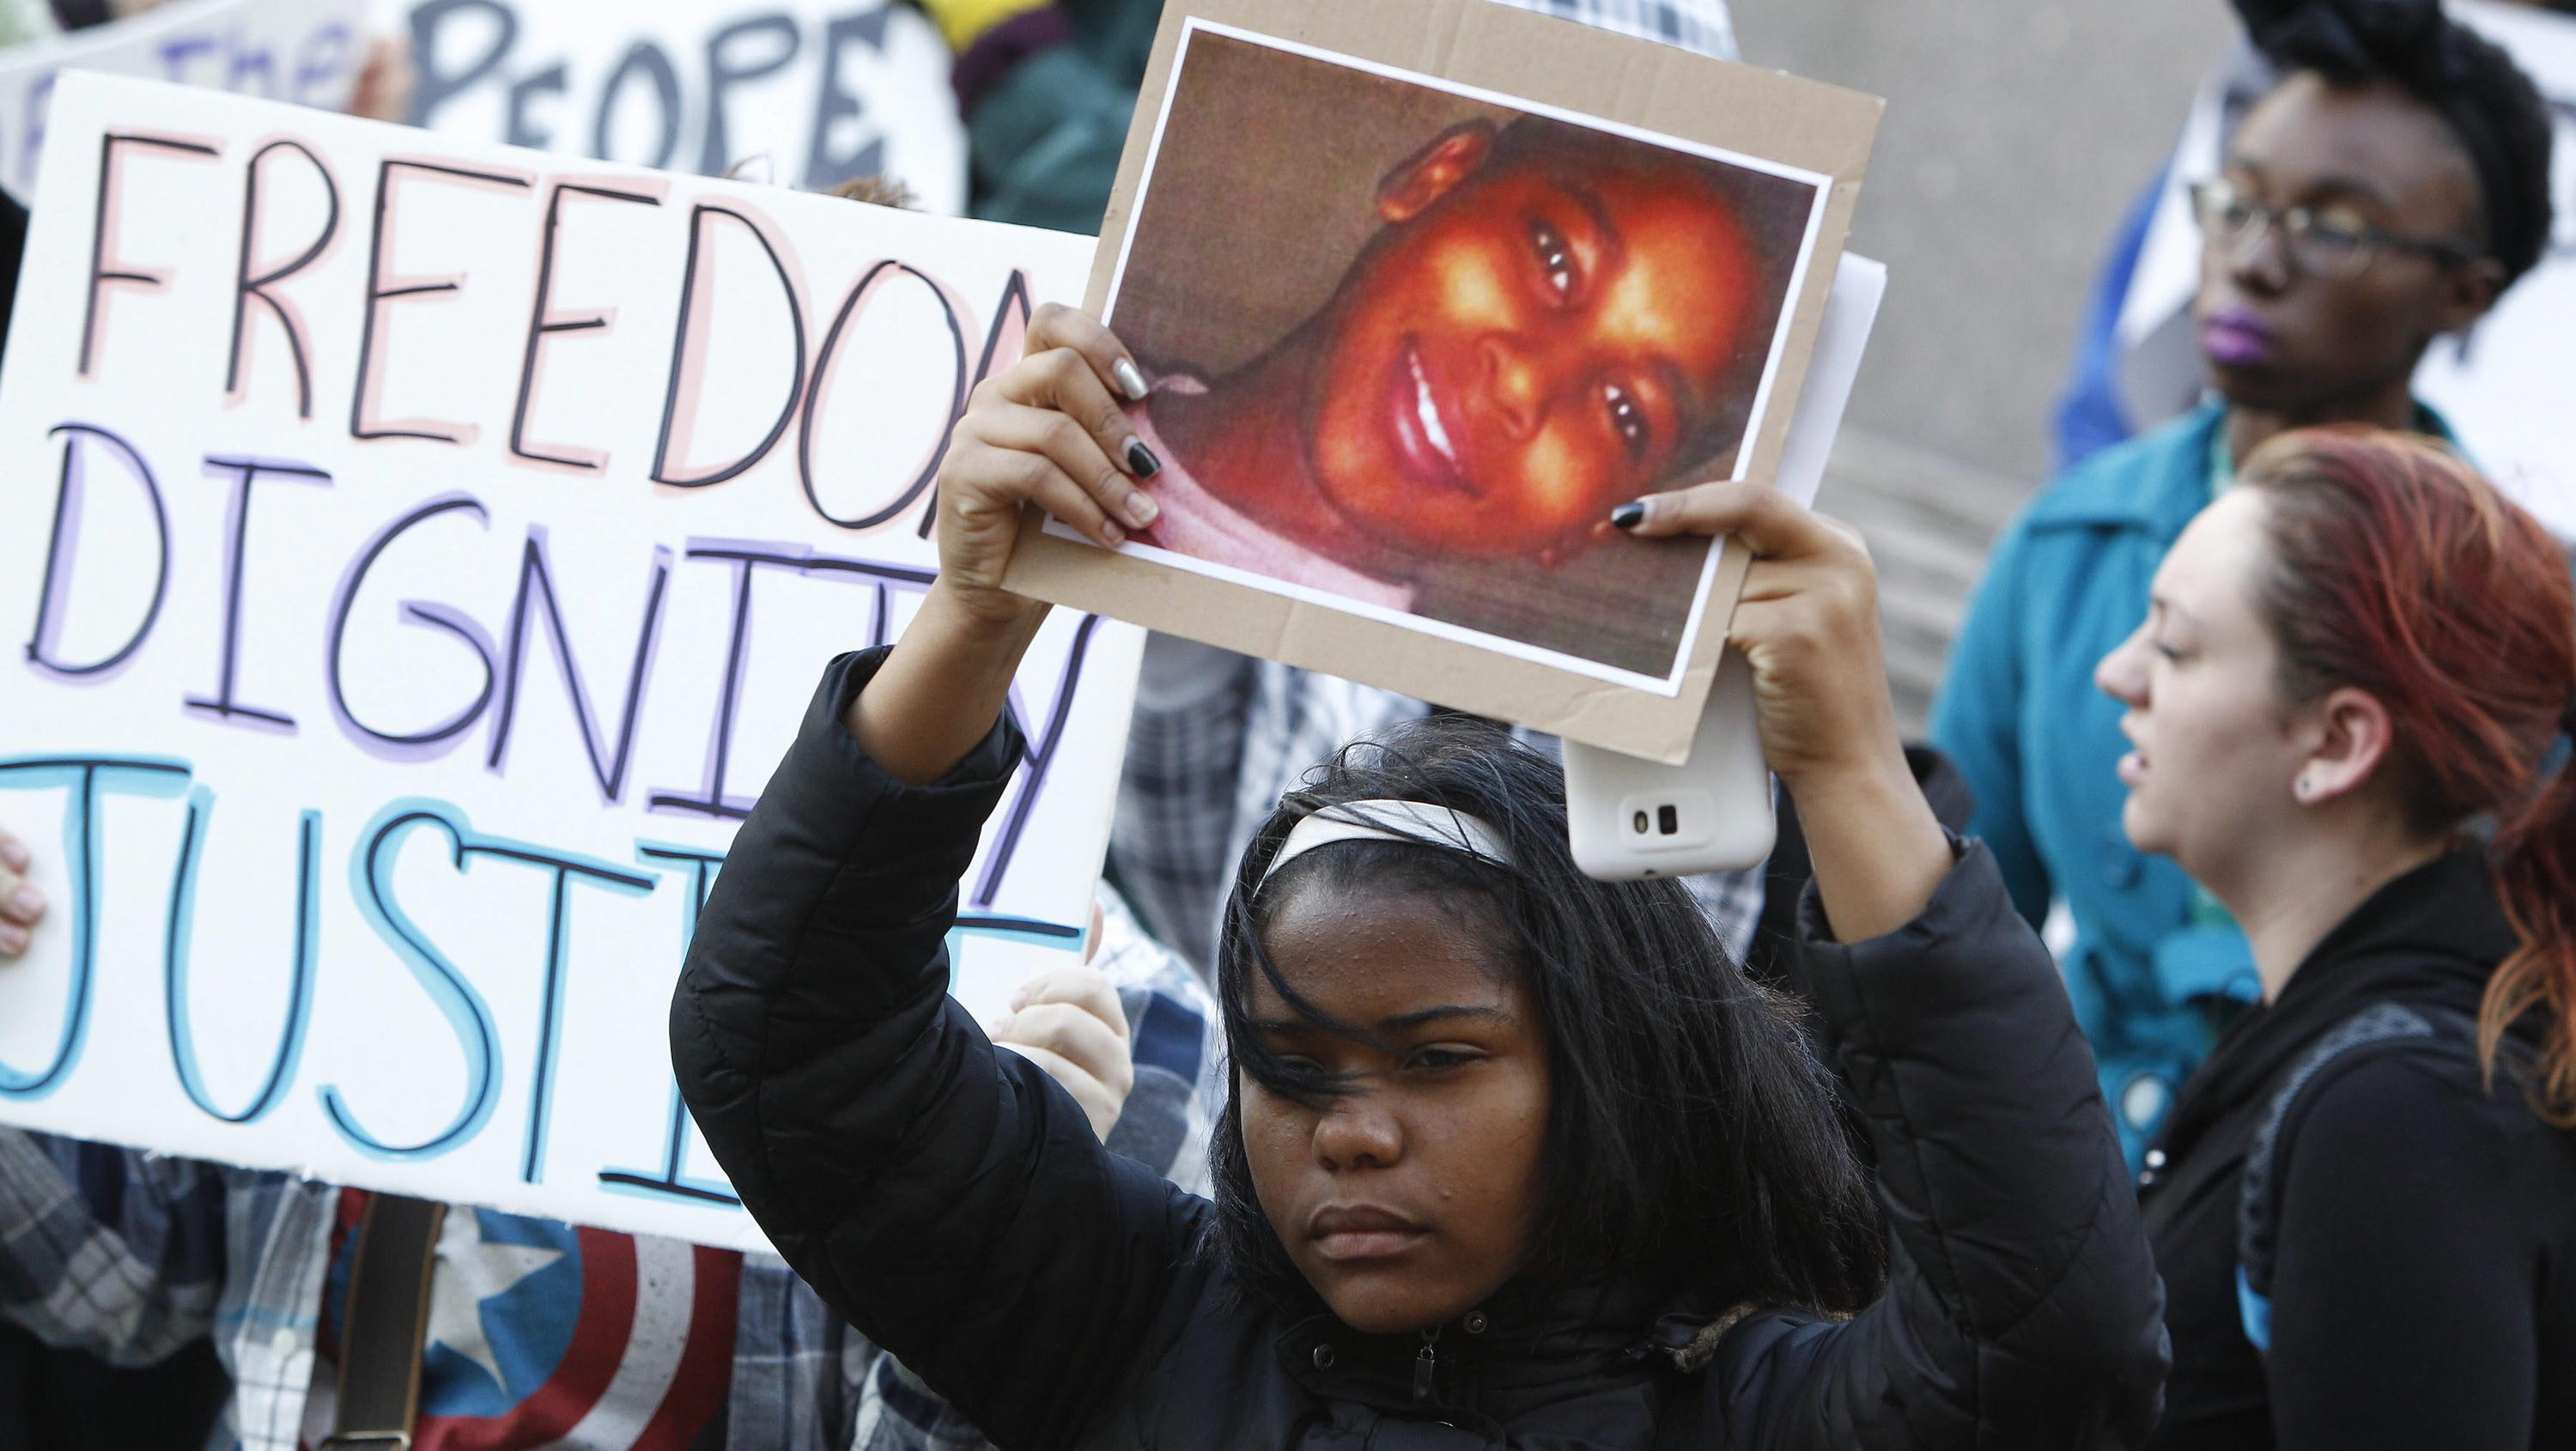 ARCHIV - 24.11.2014, USA, Cleveland: Ein Demonstrant hält bei einer Kundgebung auf dem Public Square ein Plakat mit einem Bild von Tamir Rice. Nach den tödlichen Schüssen auf einen zwölfjährigen schwarzen Jungen in den USA im Jahr 2014 hat das Justiz